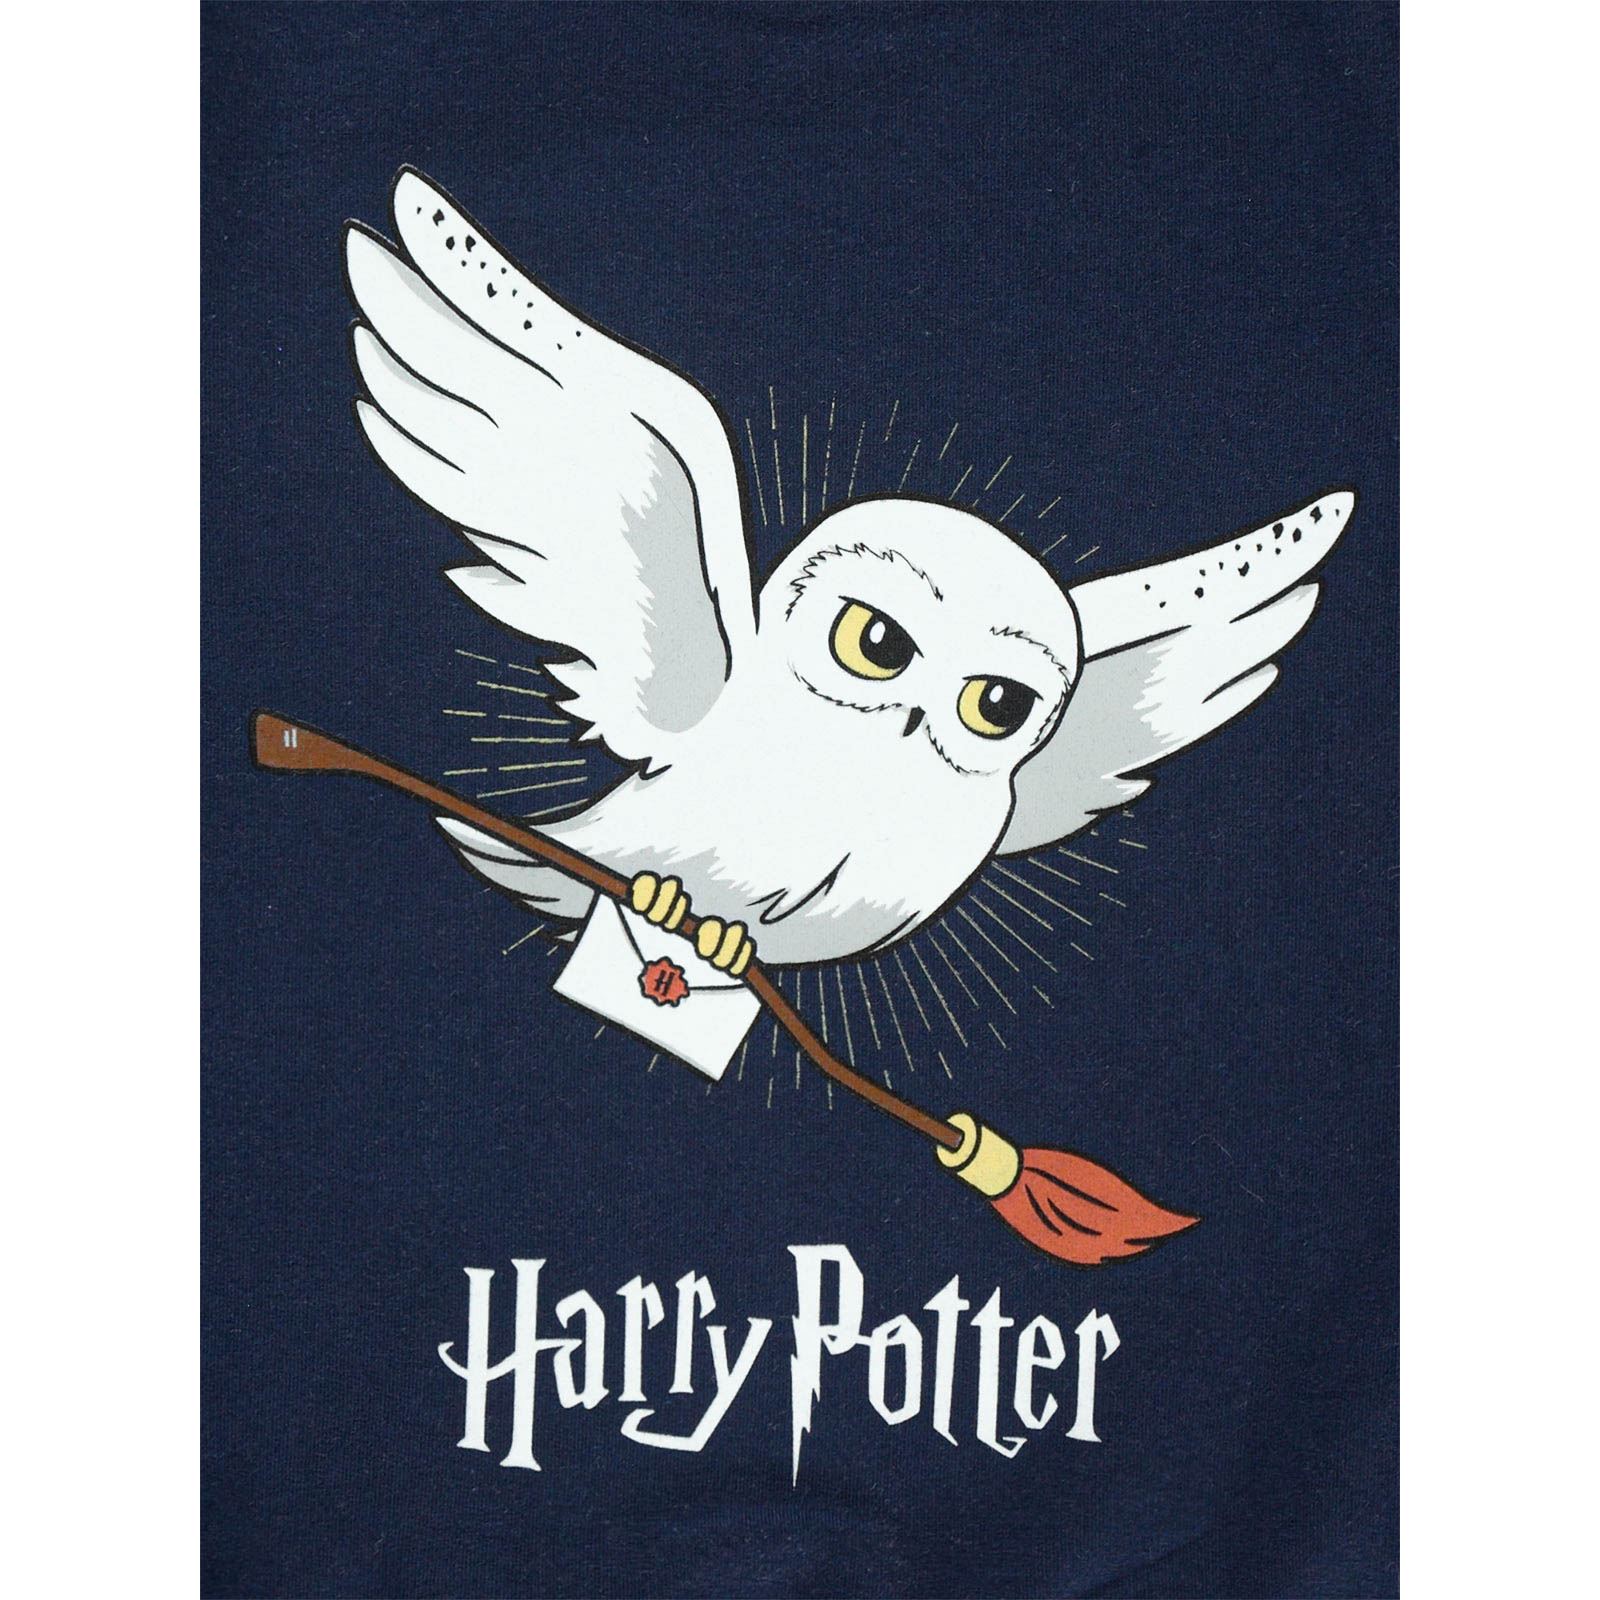 Harry Potter Kız Çocuk Sweatshirt 2-5 Yaş Lacivert